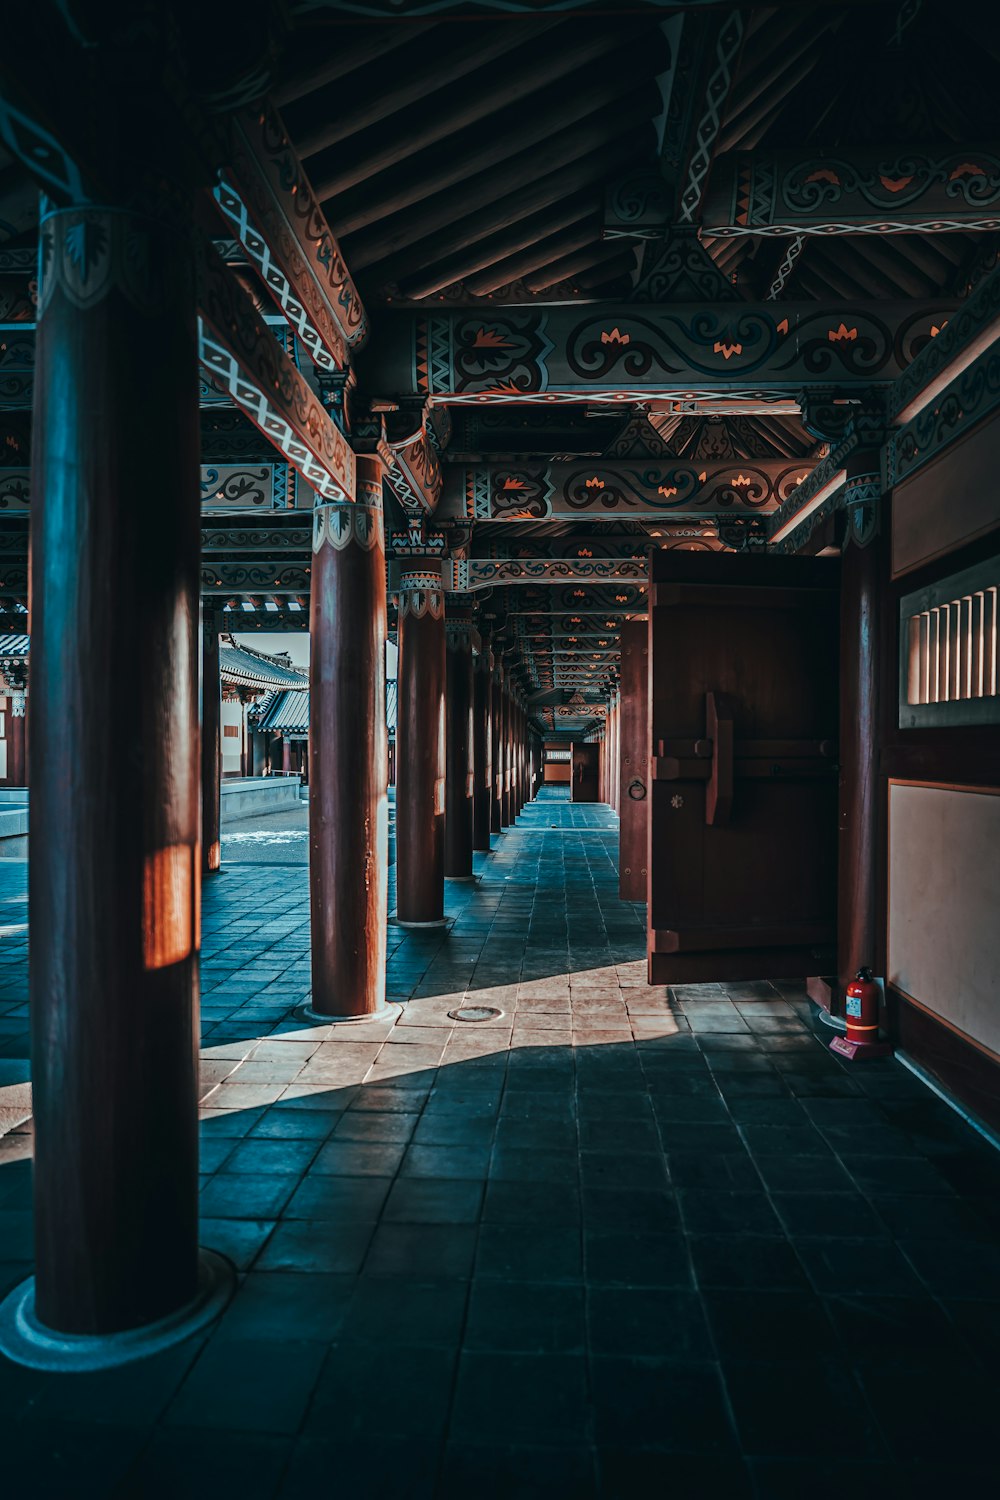 青いタイル張りの床に茶色の木製の廊下